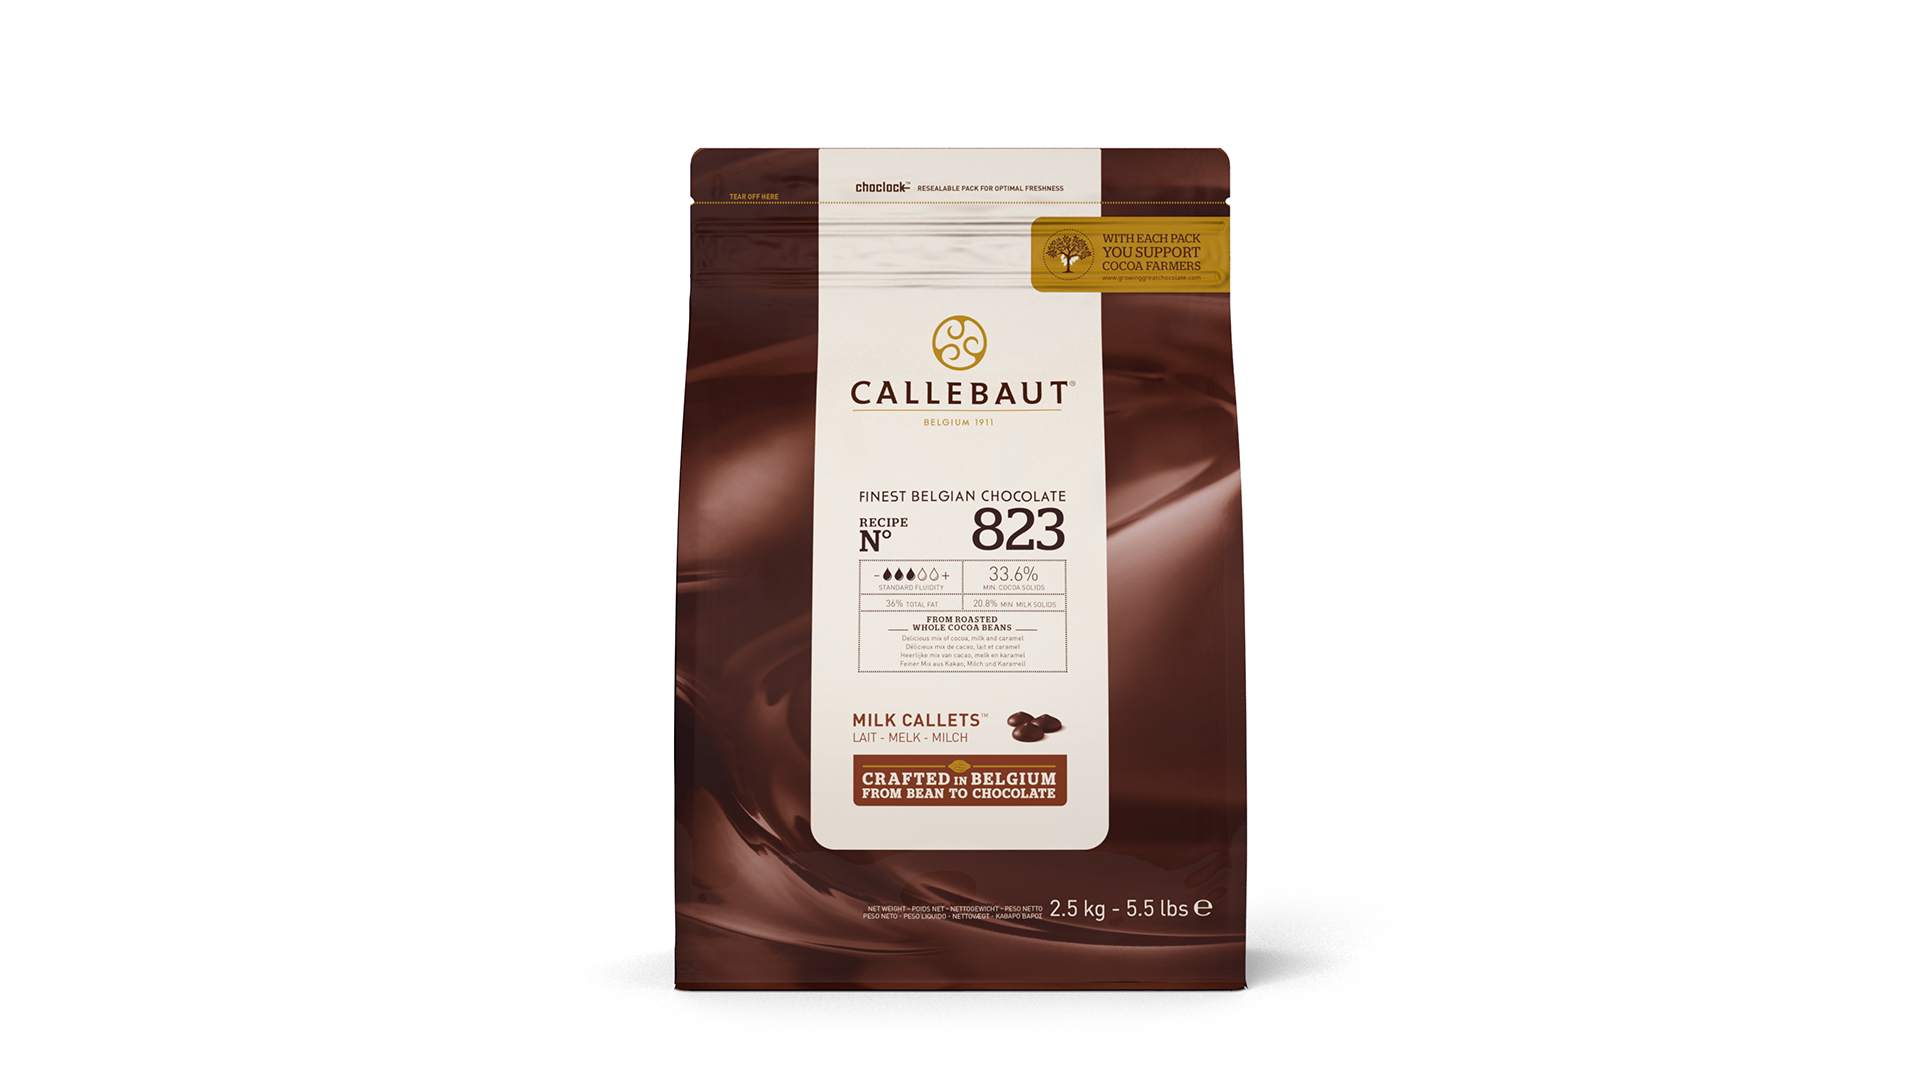 01827
Callebaut